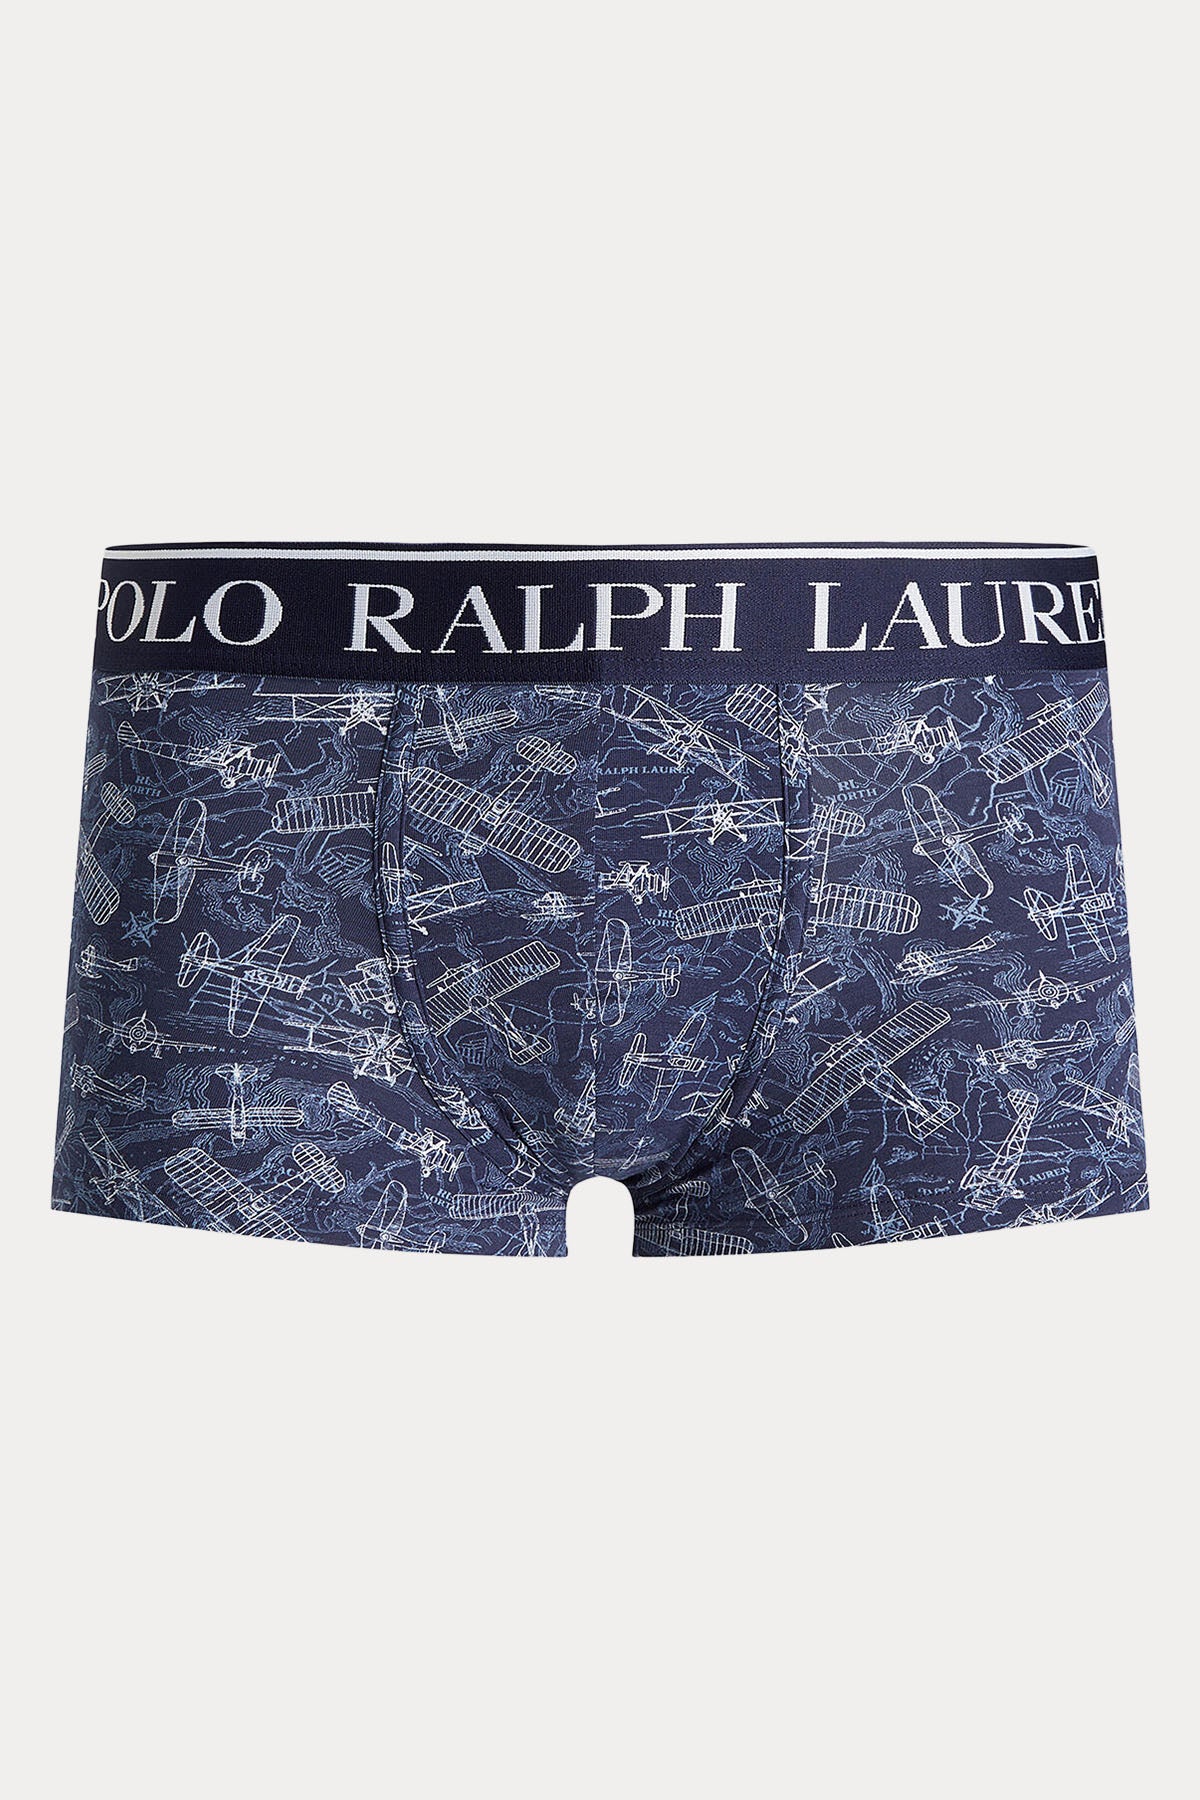 Polo Ralph Lauren Tekli Paket Streç Pamuklu Boxer-Libas Trendy Fashion Store